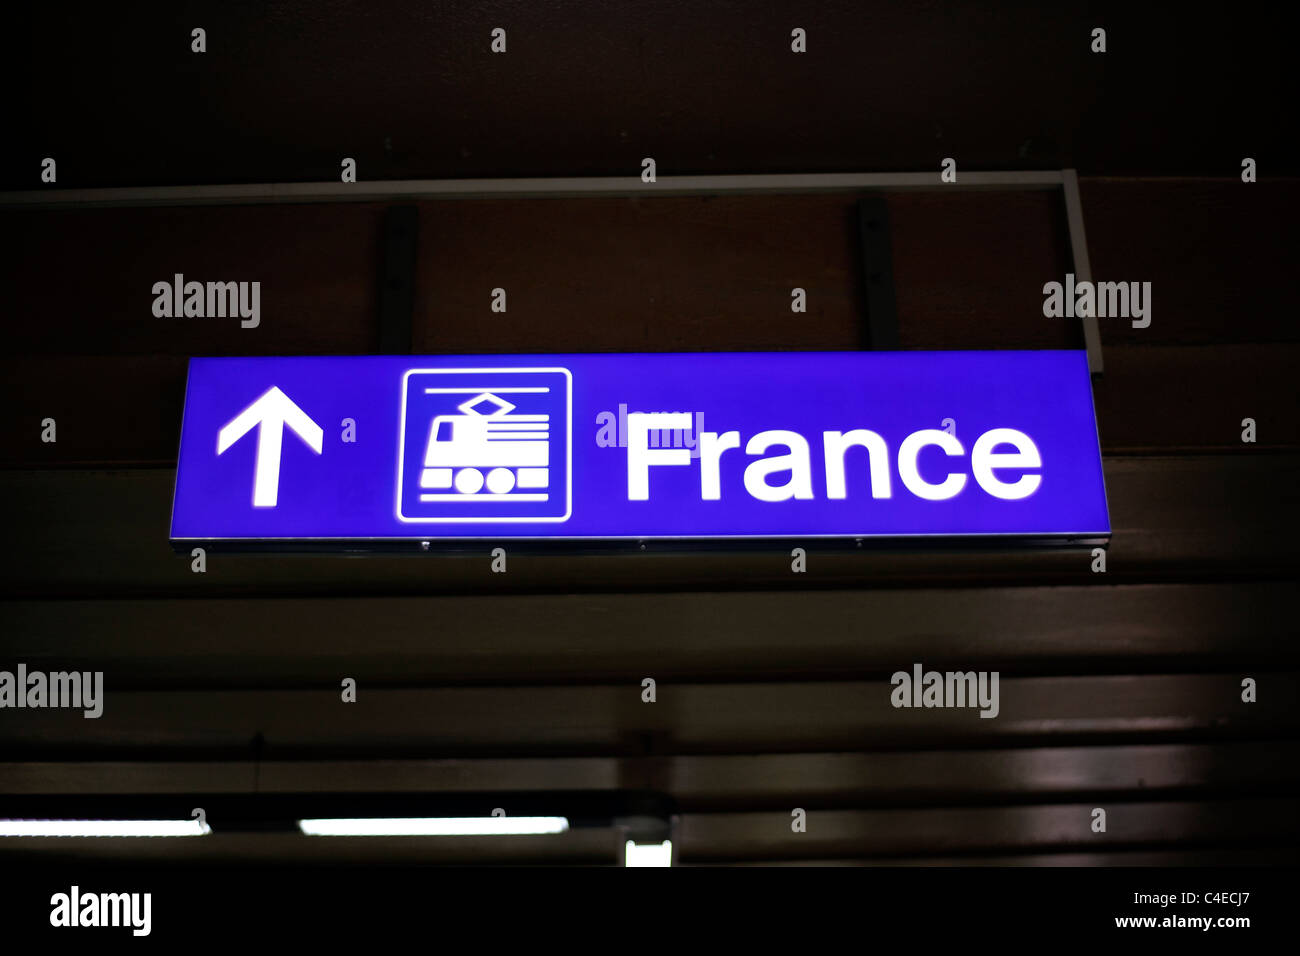 Direction de plates-formes (TGV et des trains pour la France), Genève, Suisse. Banque D'Images